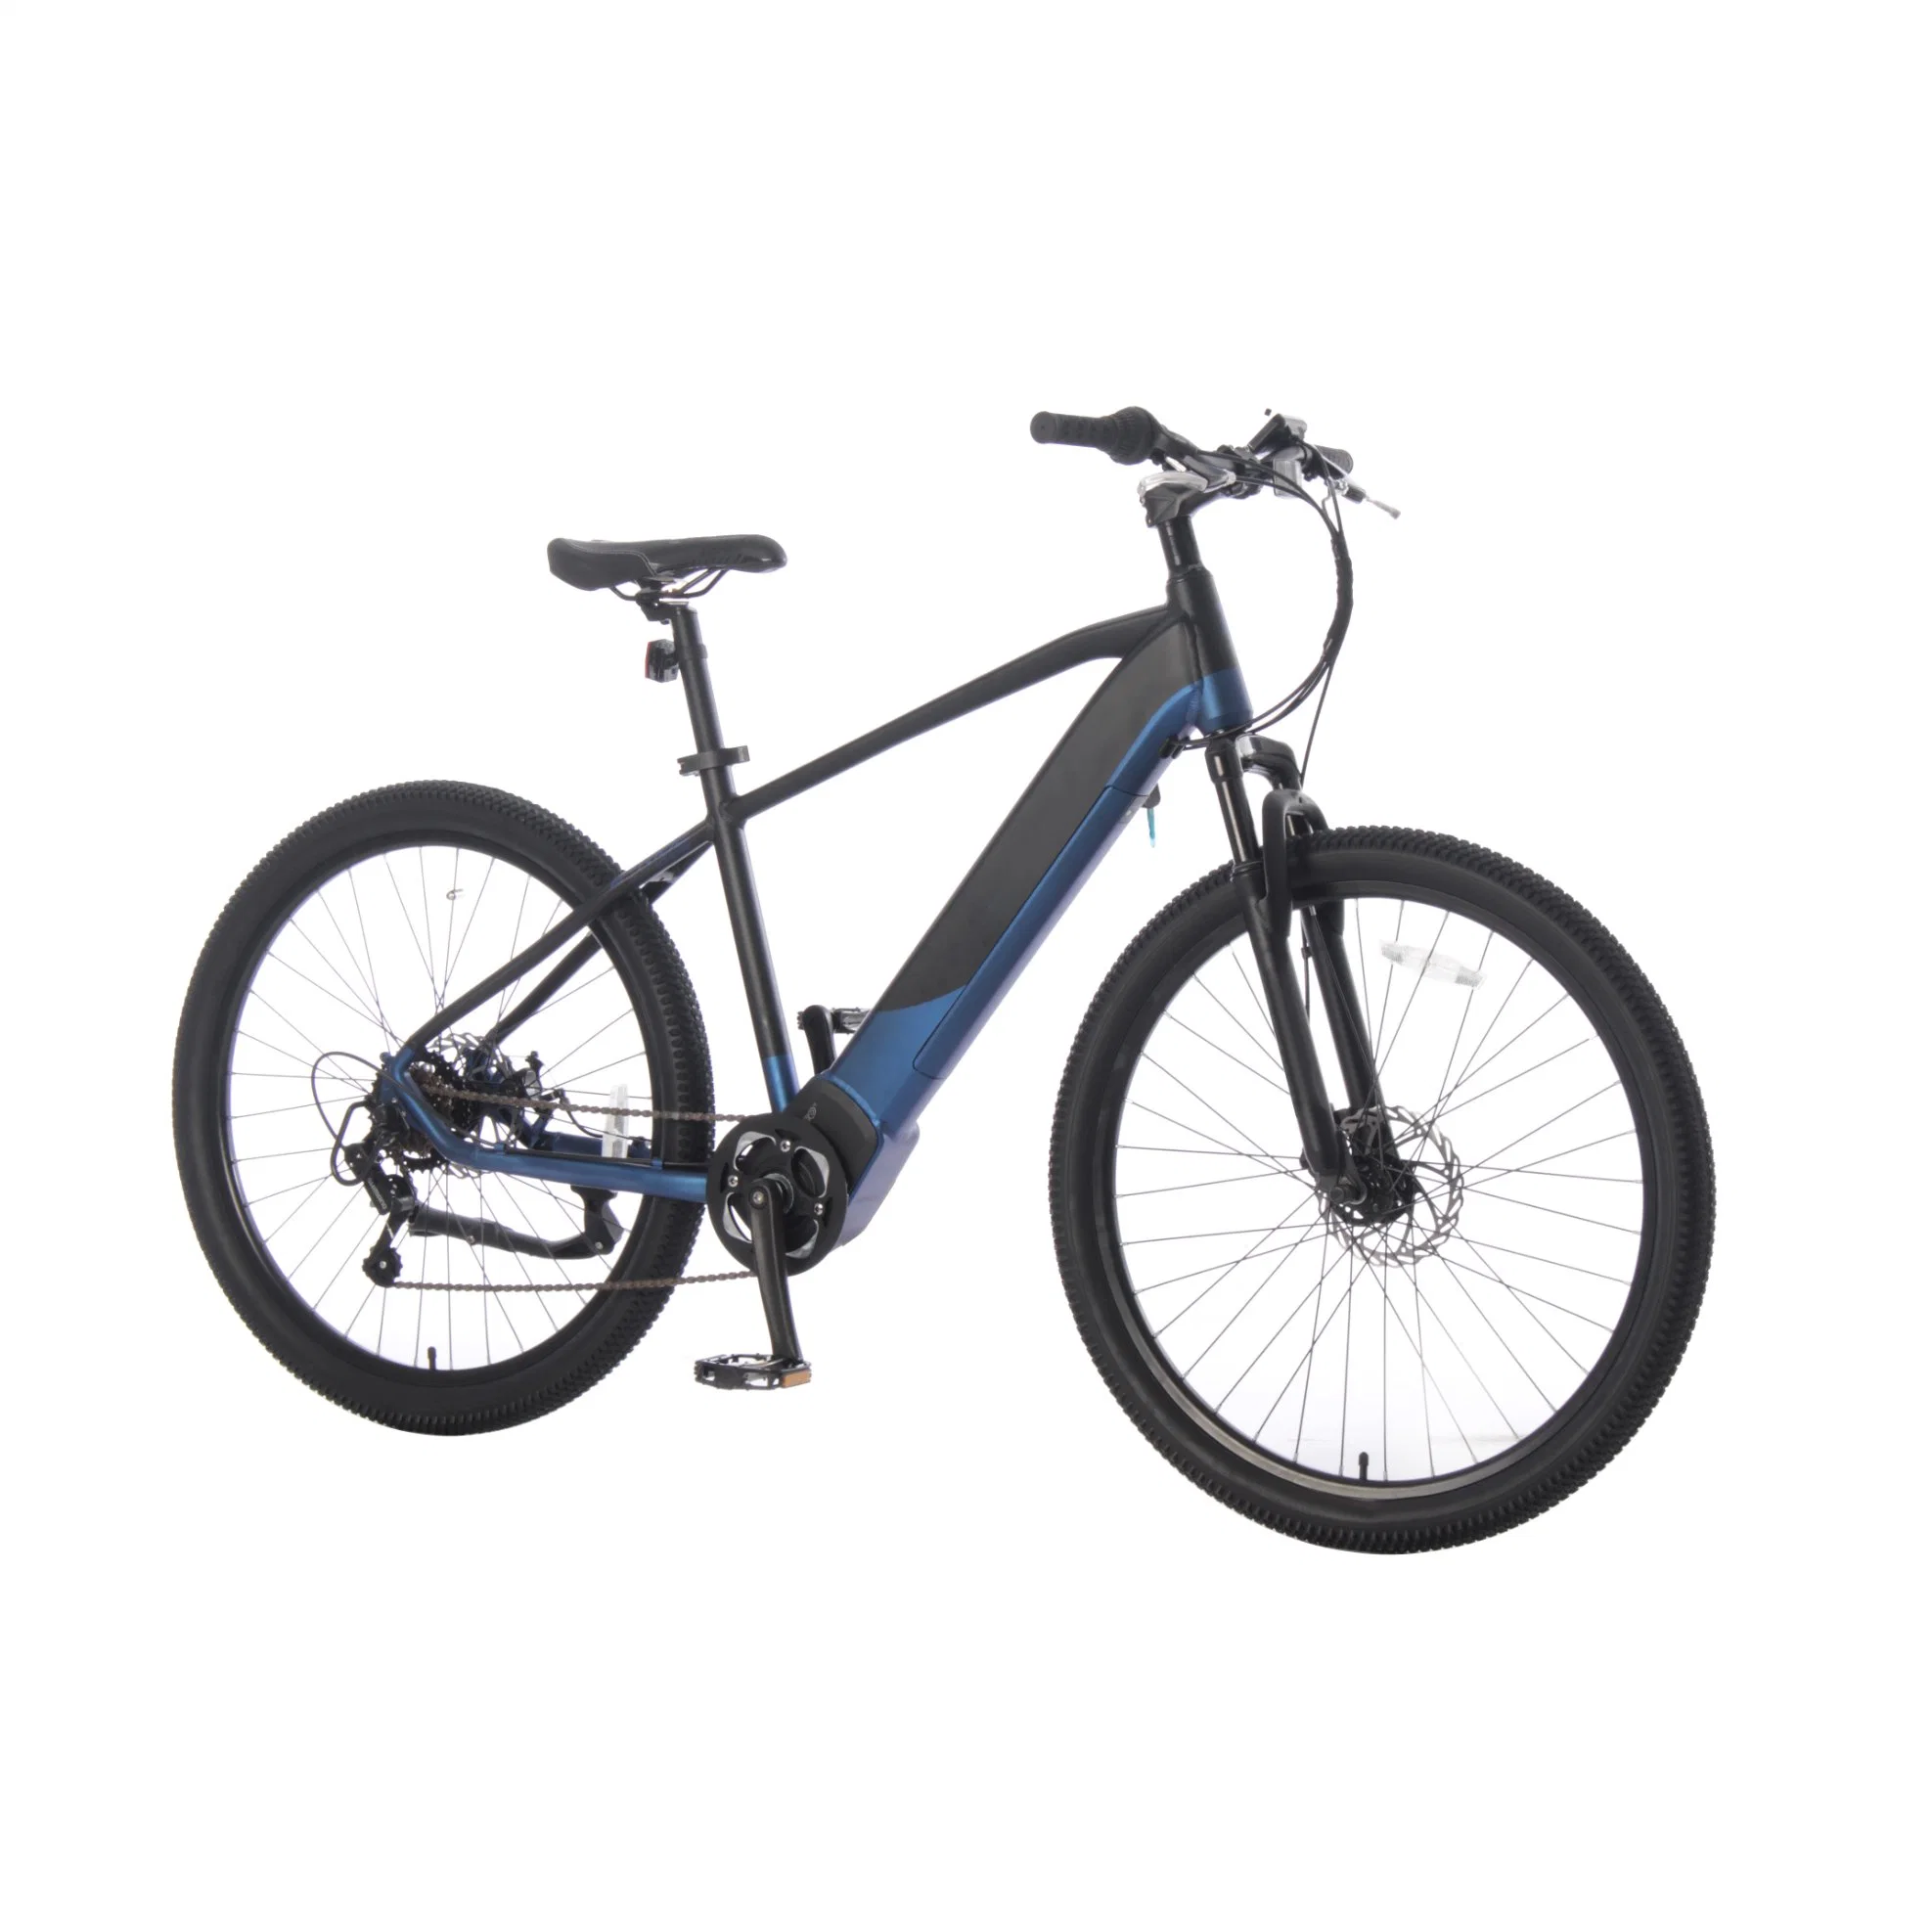 Высокое качество дешевые 36V 250W средний диск грязи ЖК-дисплей алюминиевых сплавов цветных индивидуального логотипа индивидуальные велосипед электрический Ebike горных районов